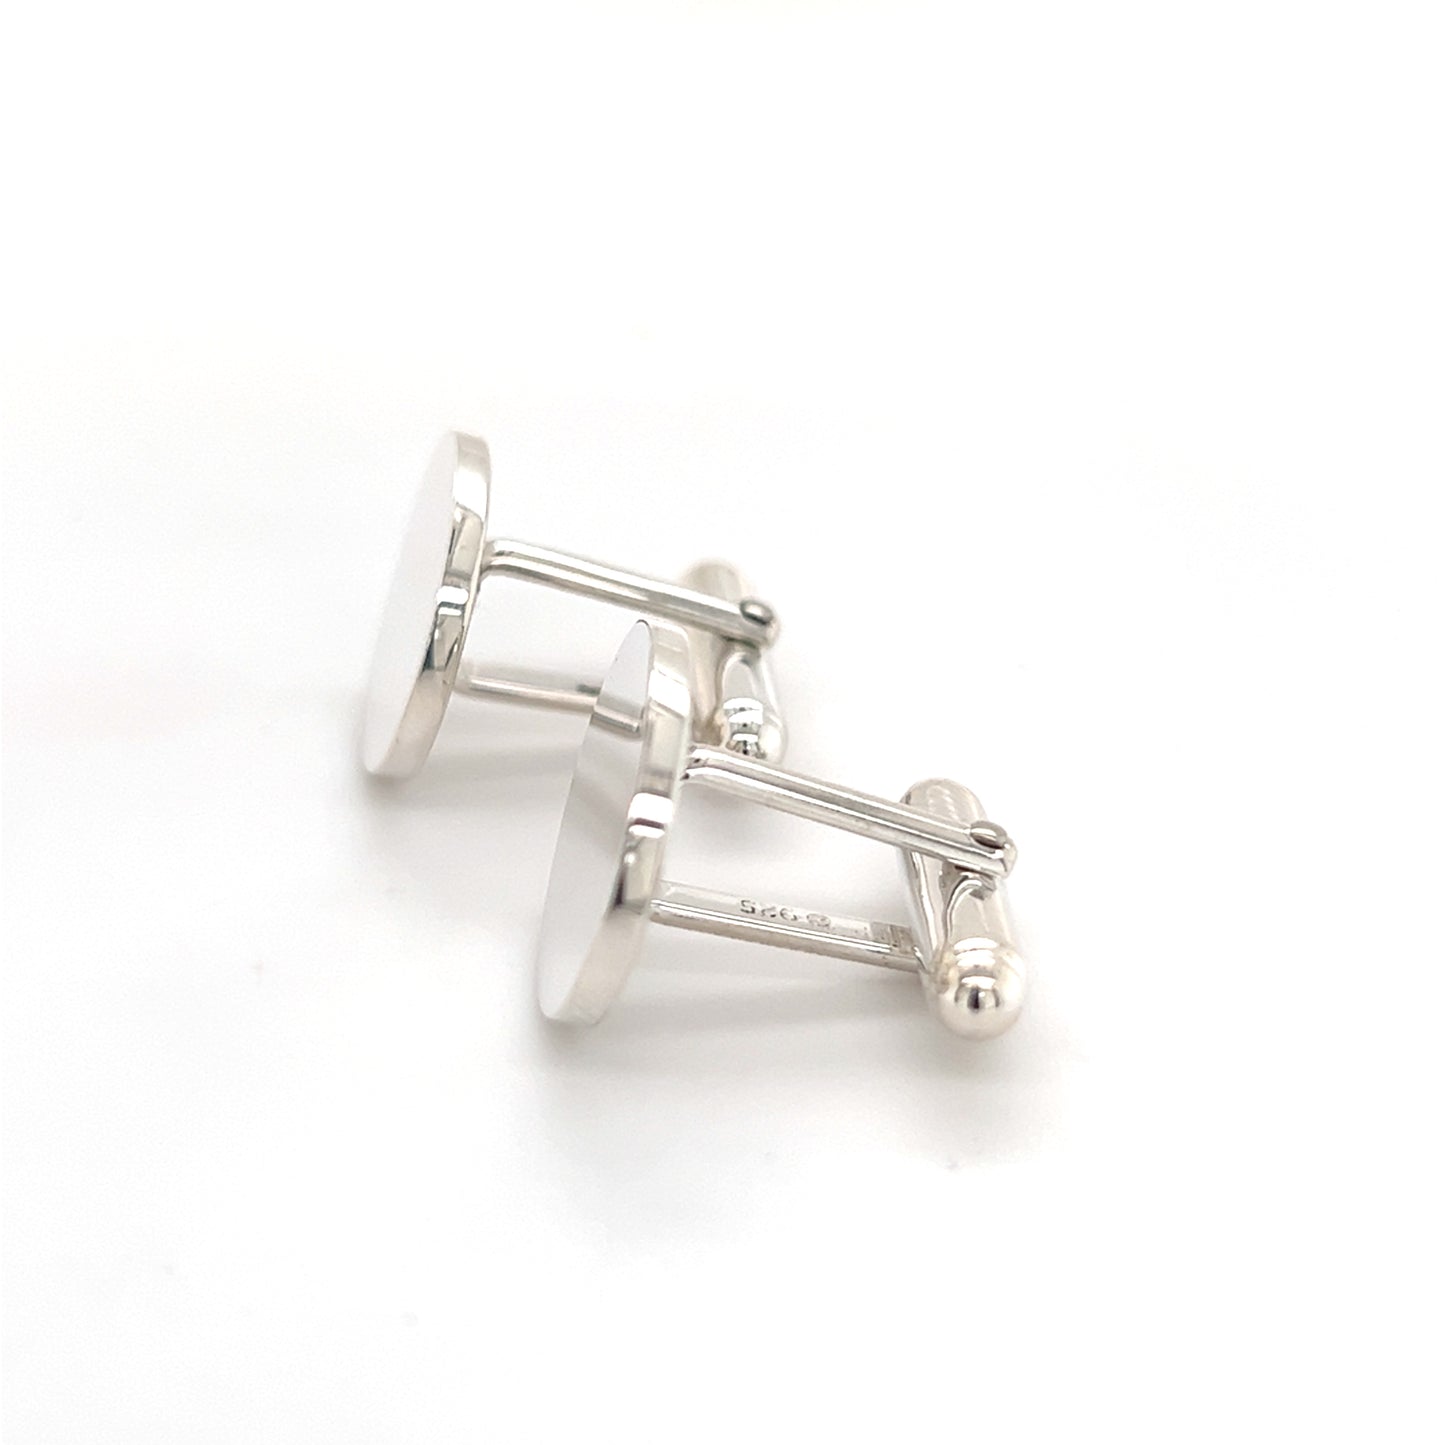 Tiffany & Co Estate Sterling Silver Cufflinks 12 Grams TIF253 - Certified Fine Jewelry